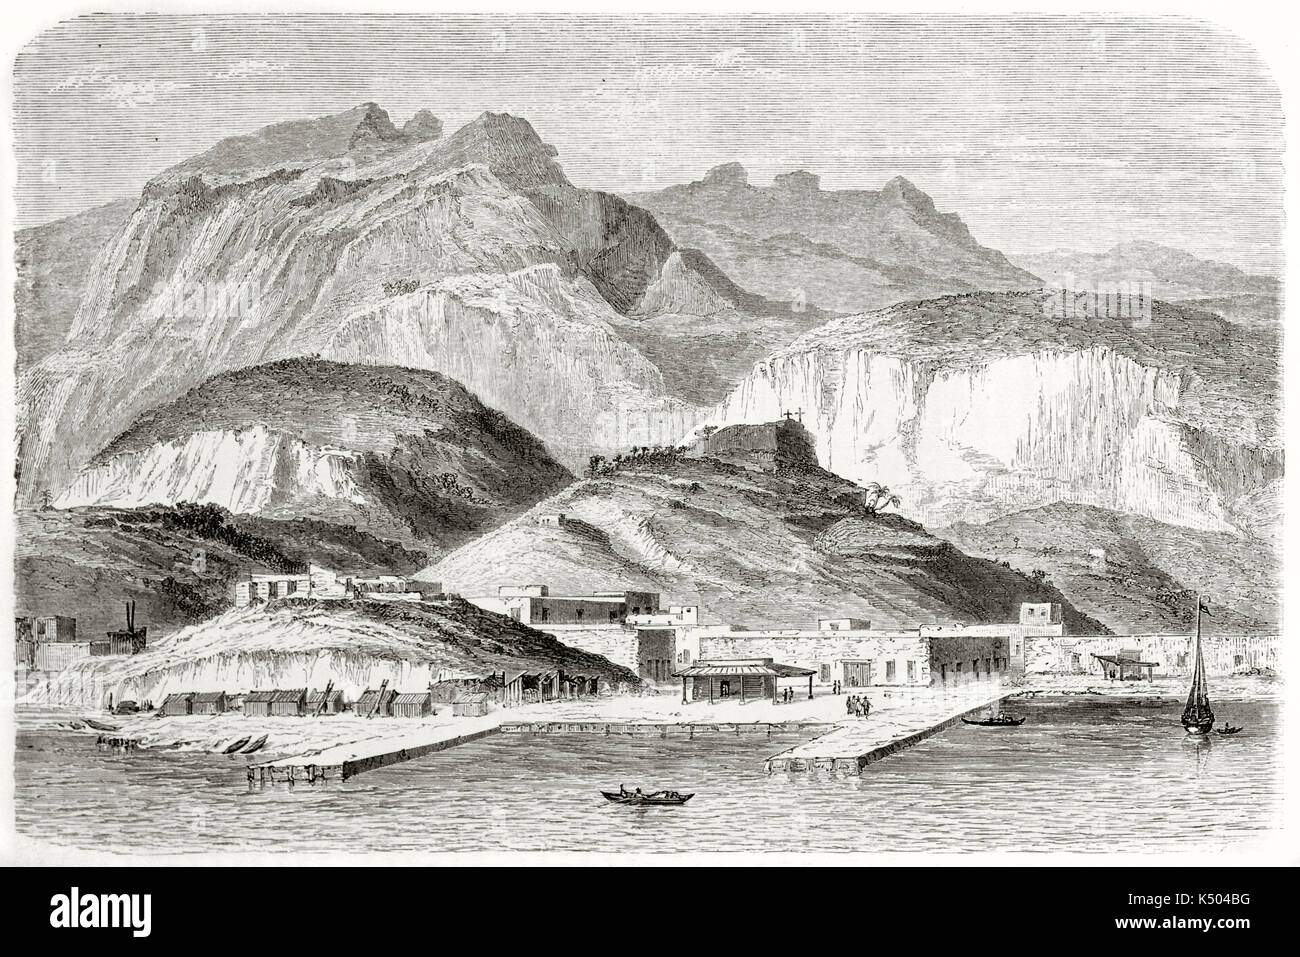 Mer ancienne port avec hautes collines derrière, dans un contexte pacifique des paysages mexicains. Voir l'ancien État de Sonora Guaymas Mexique. Créé par Lancelot après Vigneaux publié sur le Tour du Monde Paris 1862 Banque D'Images